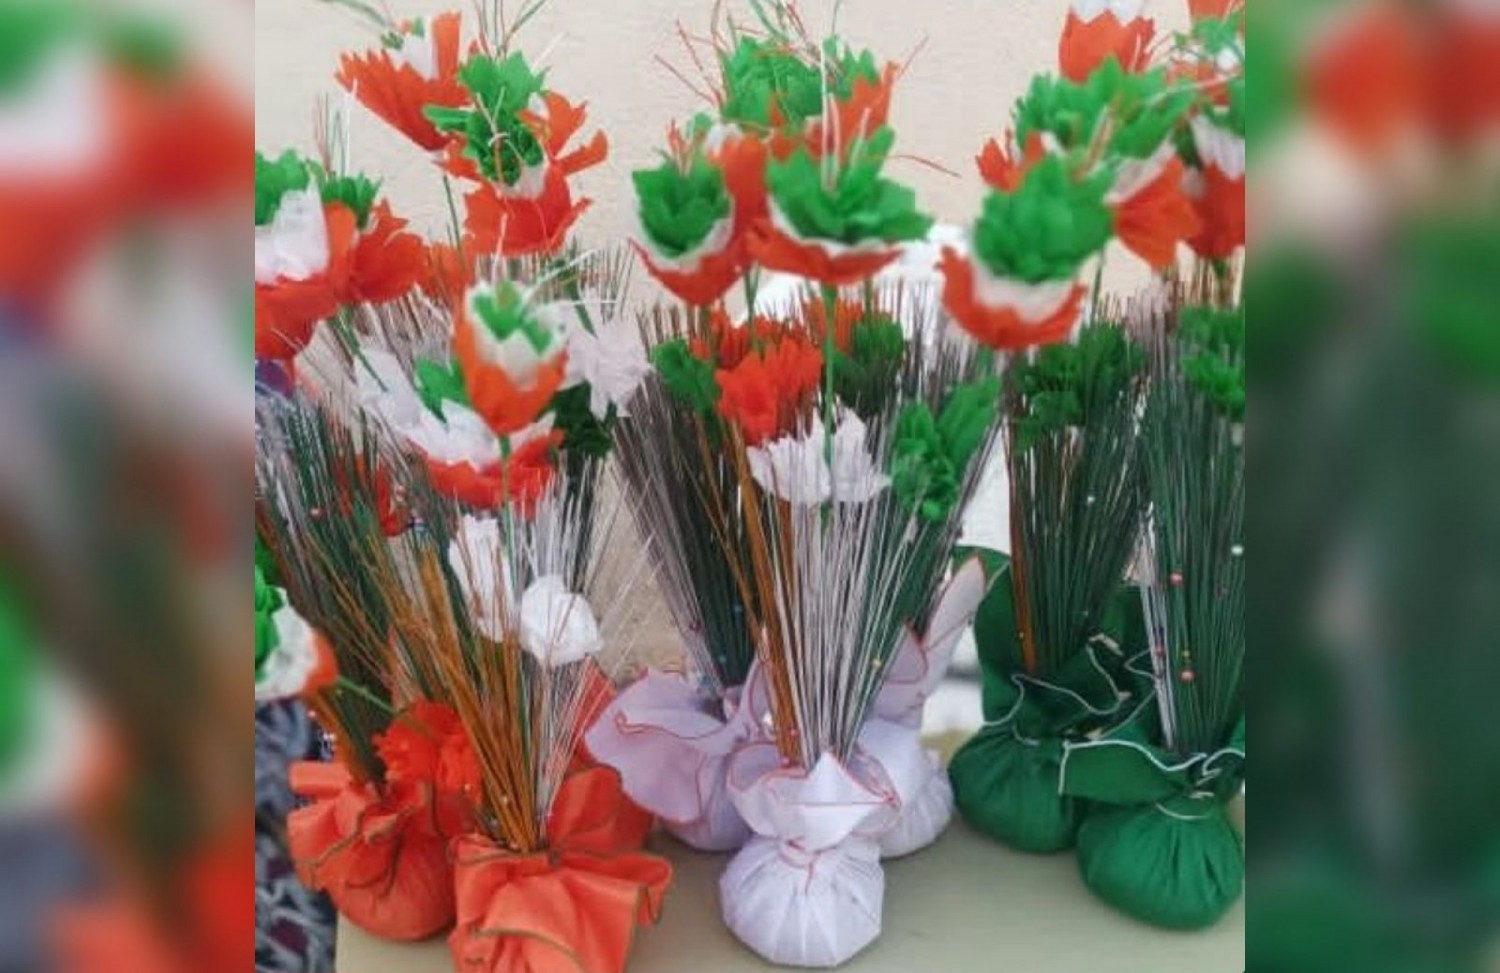 Côte d'Ivoire : Bouaké, les pensionnaires du COM réalisent des bouquets de fleurs aux couleurs du drapeau pour soutenir les éléphants